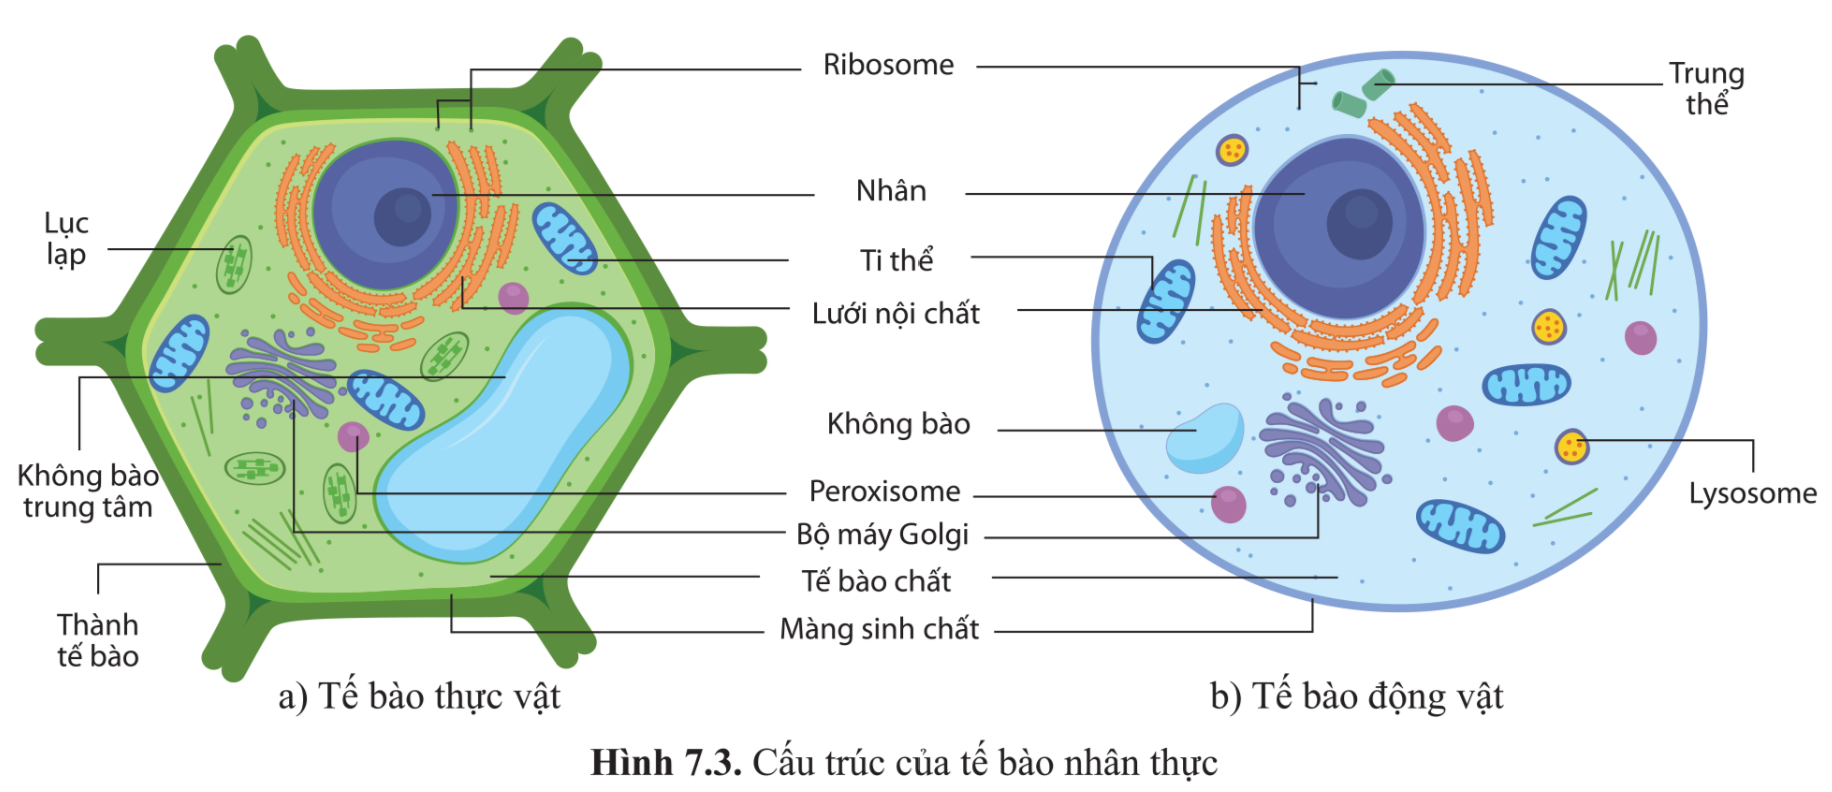 Tế bào thực vật và tế bào động vật đều là những tế bào nhân thực, chứa các thành phần cơ bản giống nhau như tế bào chất, nhân, màng sinh chất